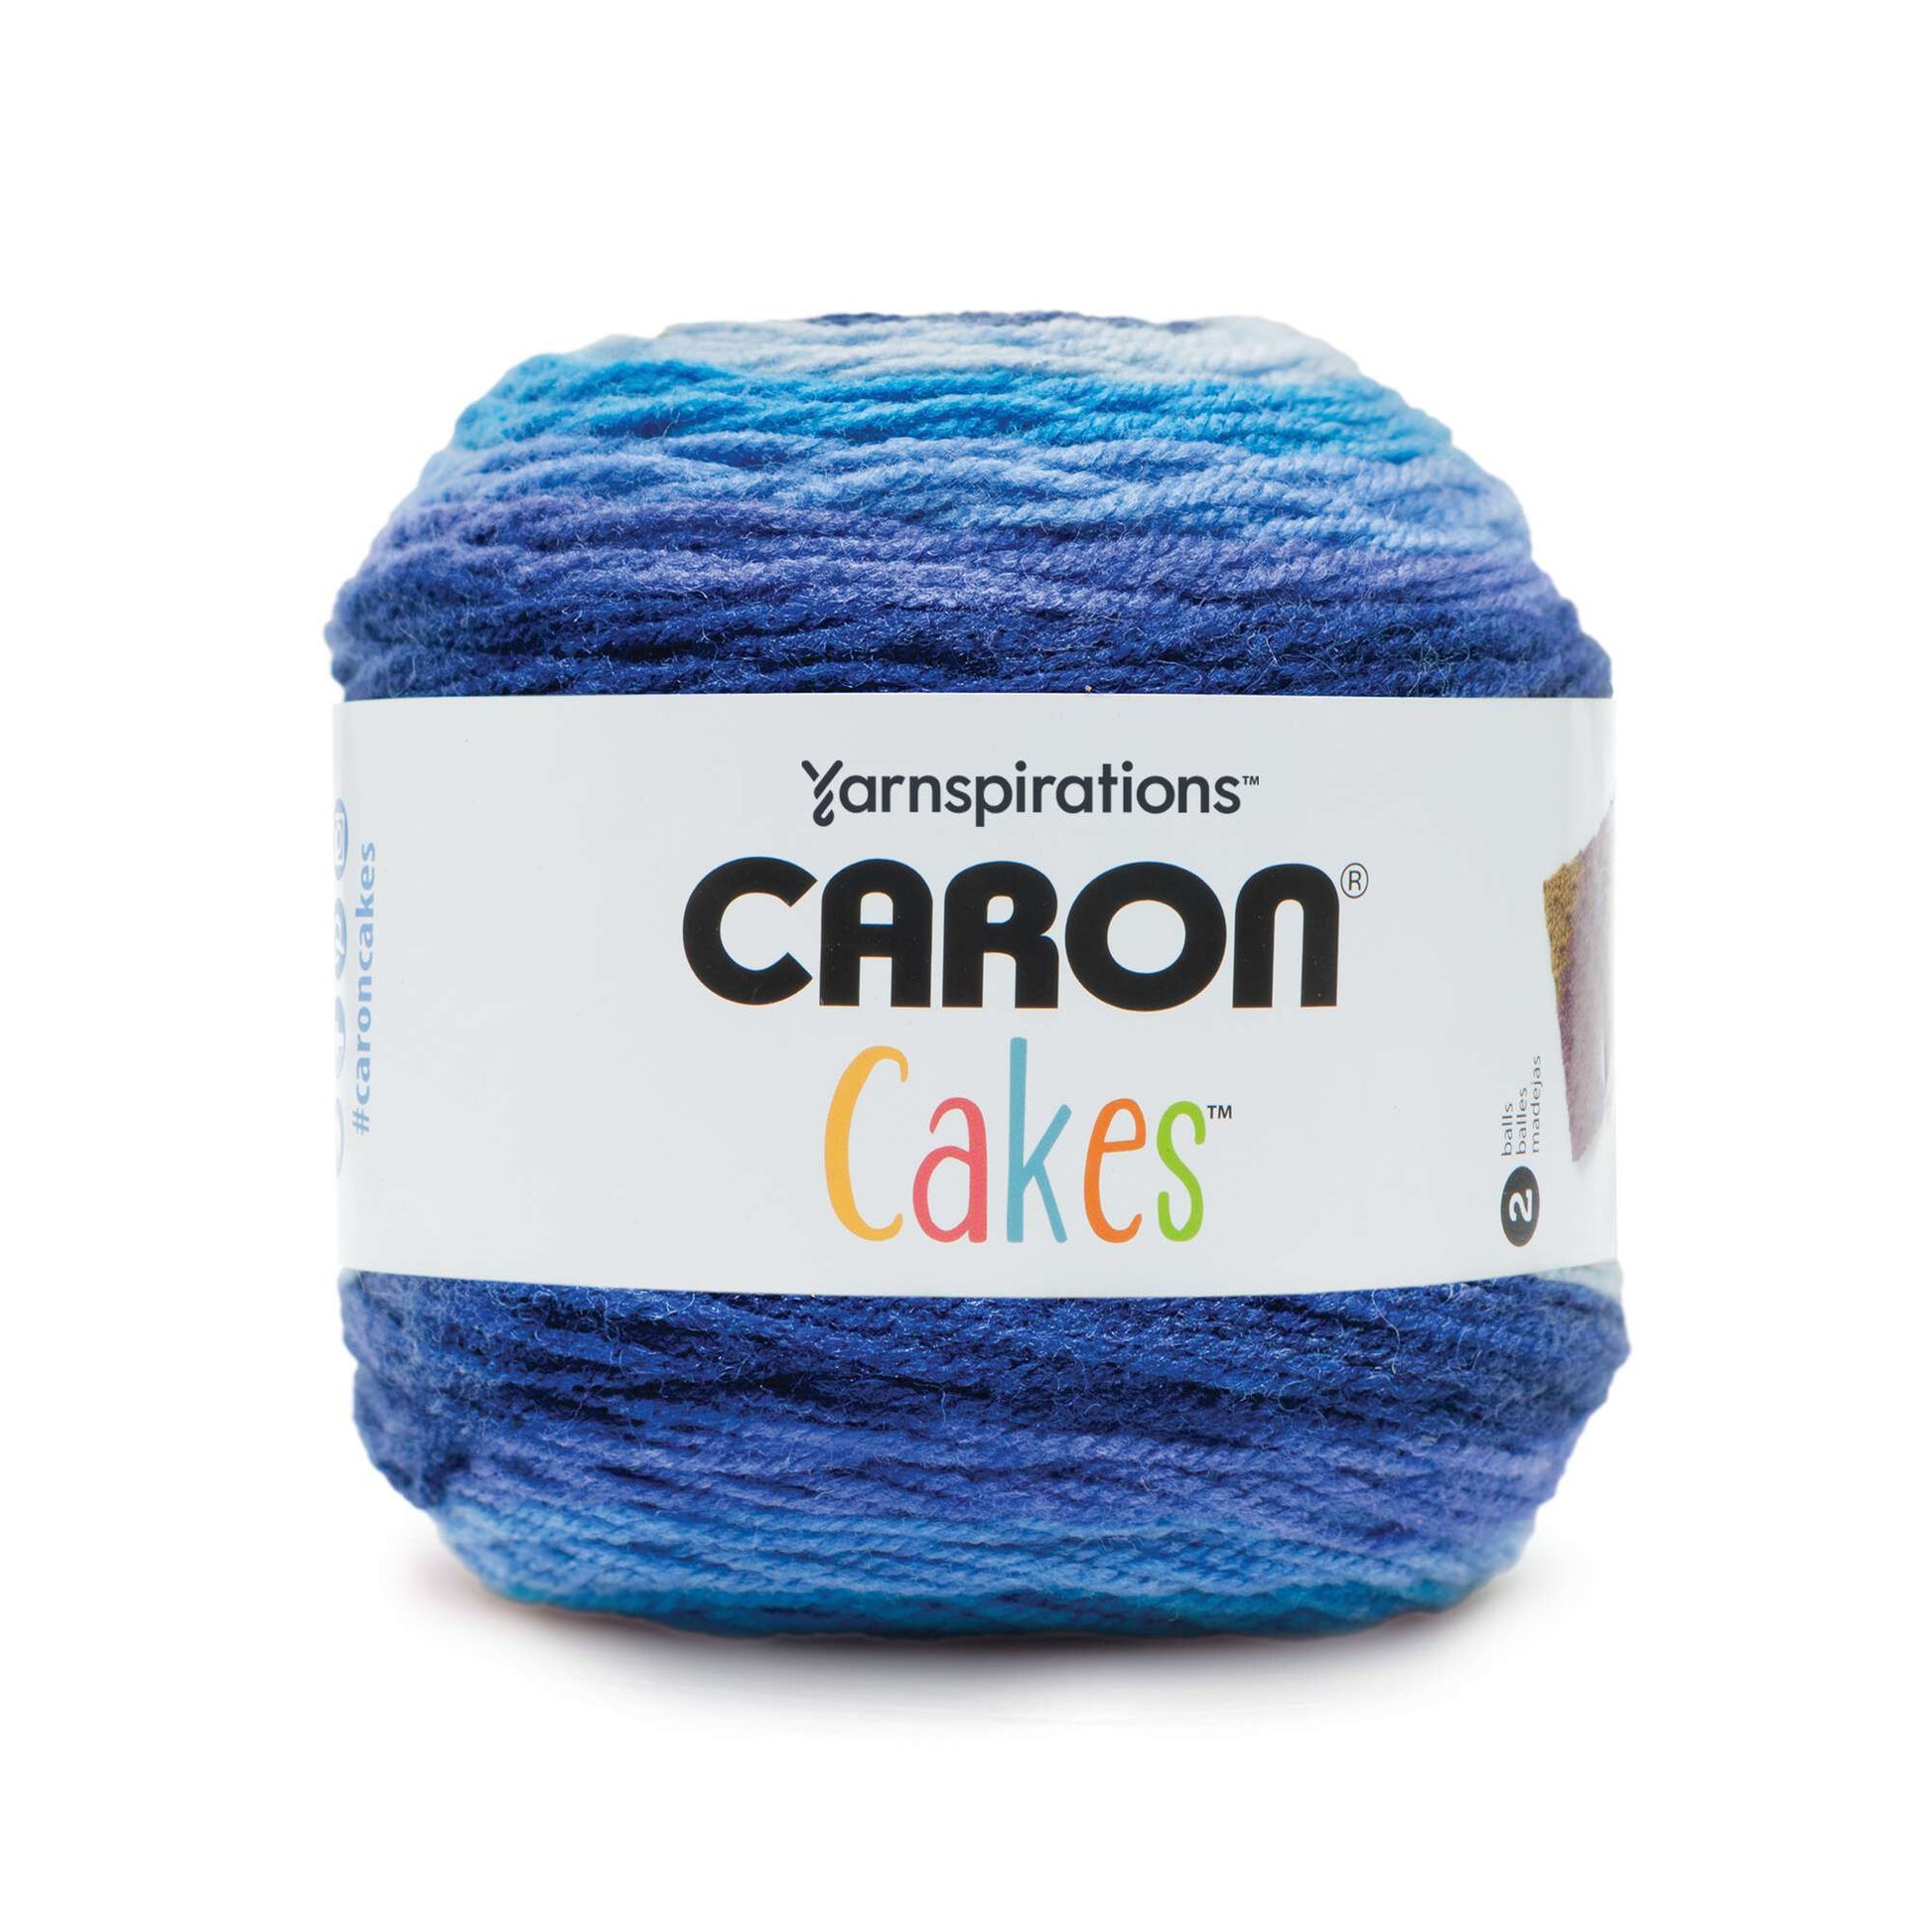 Caron Cakes Yarn